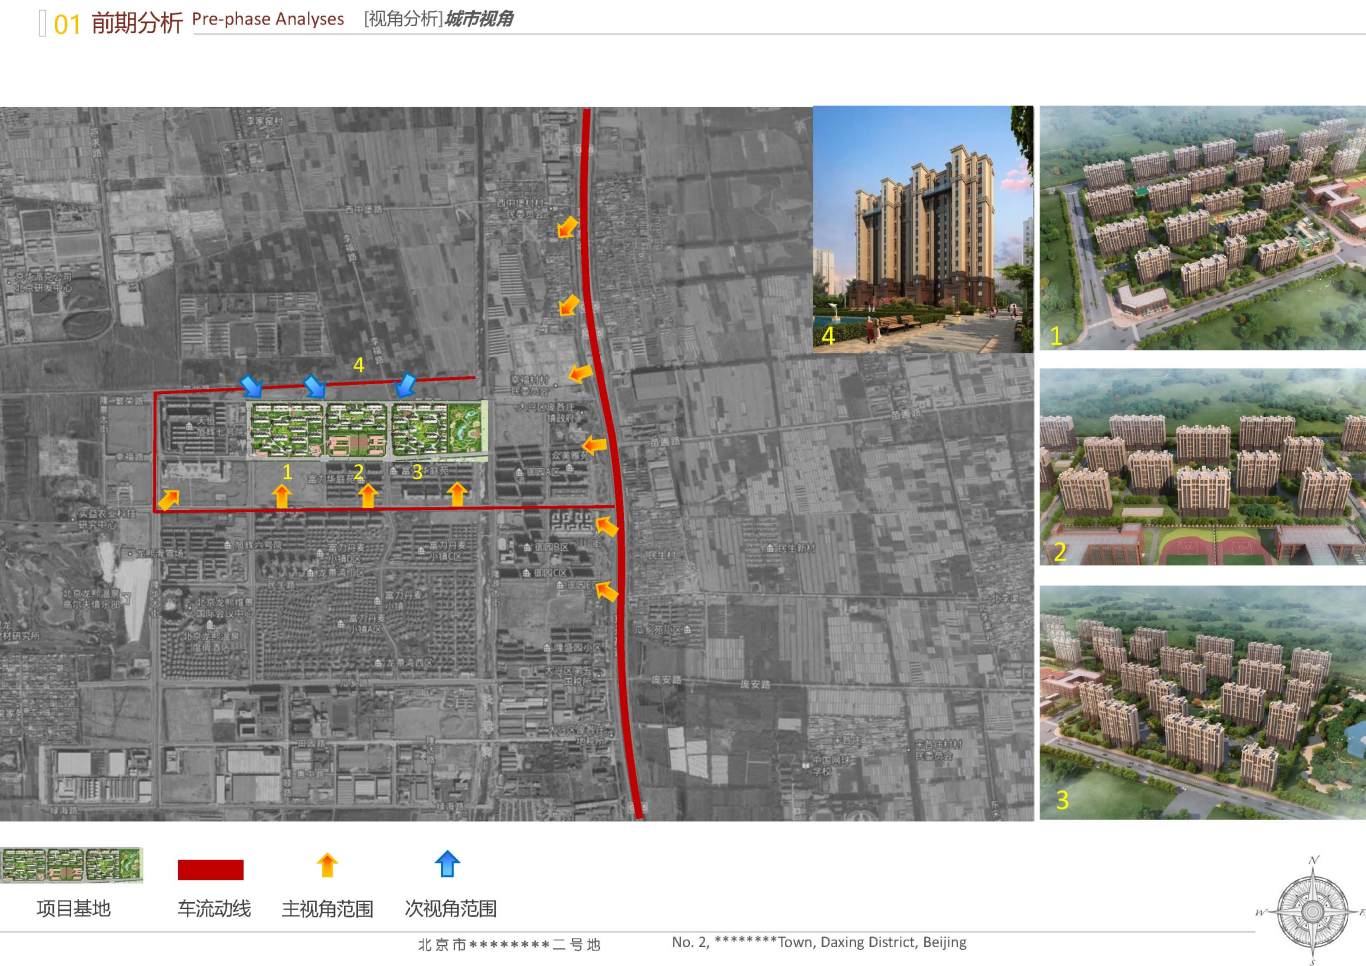 北京市大興區*****二號地夜景照明項目案例圖6